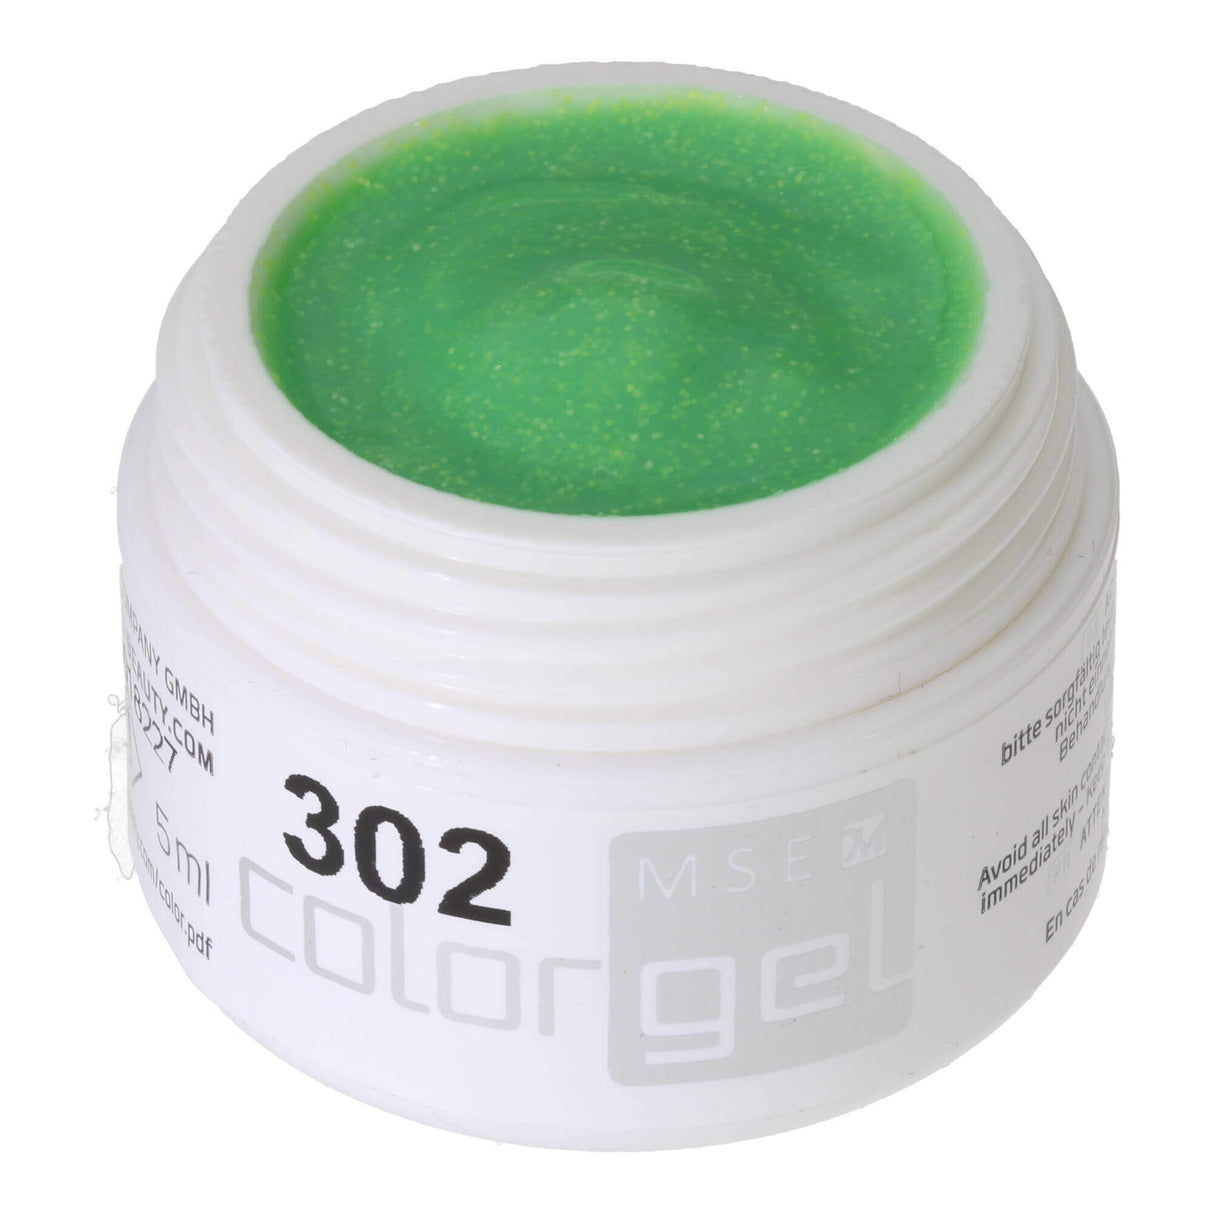 # 302 Premium-GLITTER Gel màu 5ml Màu nhạt có thể xanh lá cây với ánh kim tuyến xanh lam / xanh lục